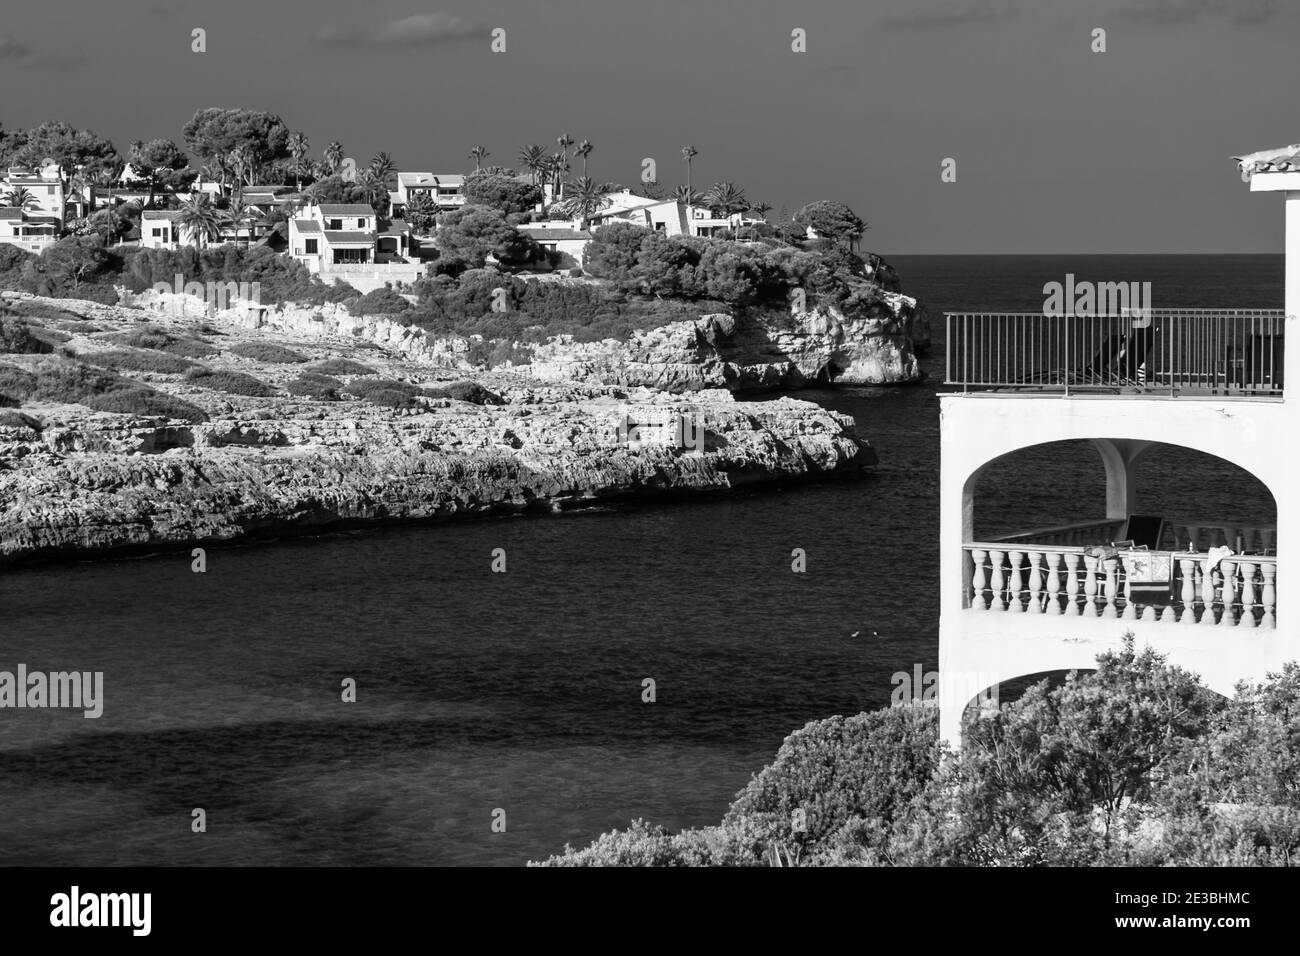 MALLORCA, ESPAGNE - 15 janvier 2021 : une belle photo en noir et blanc d'une belle plage de Majorque Banque D'Images